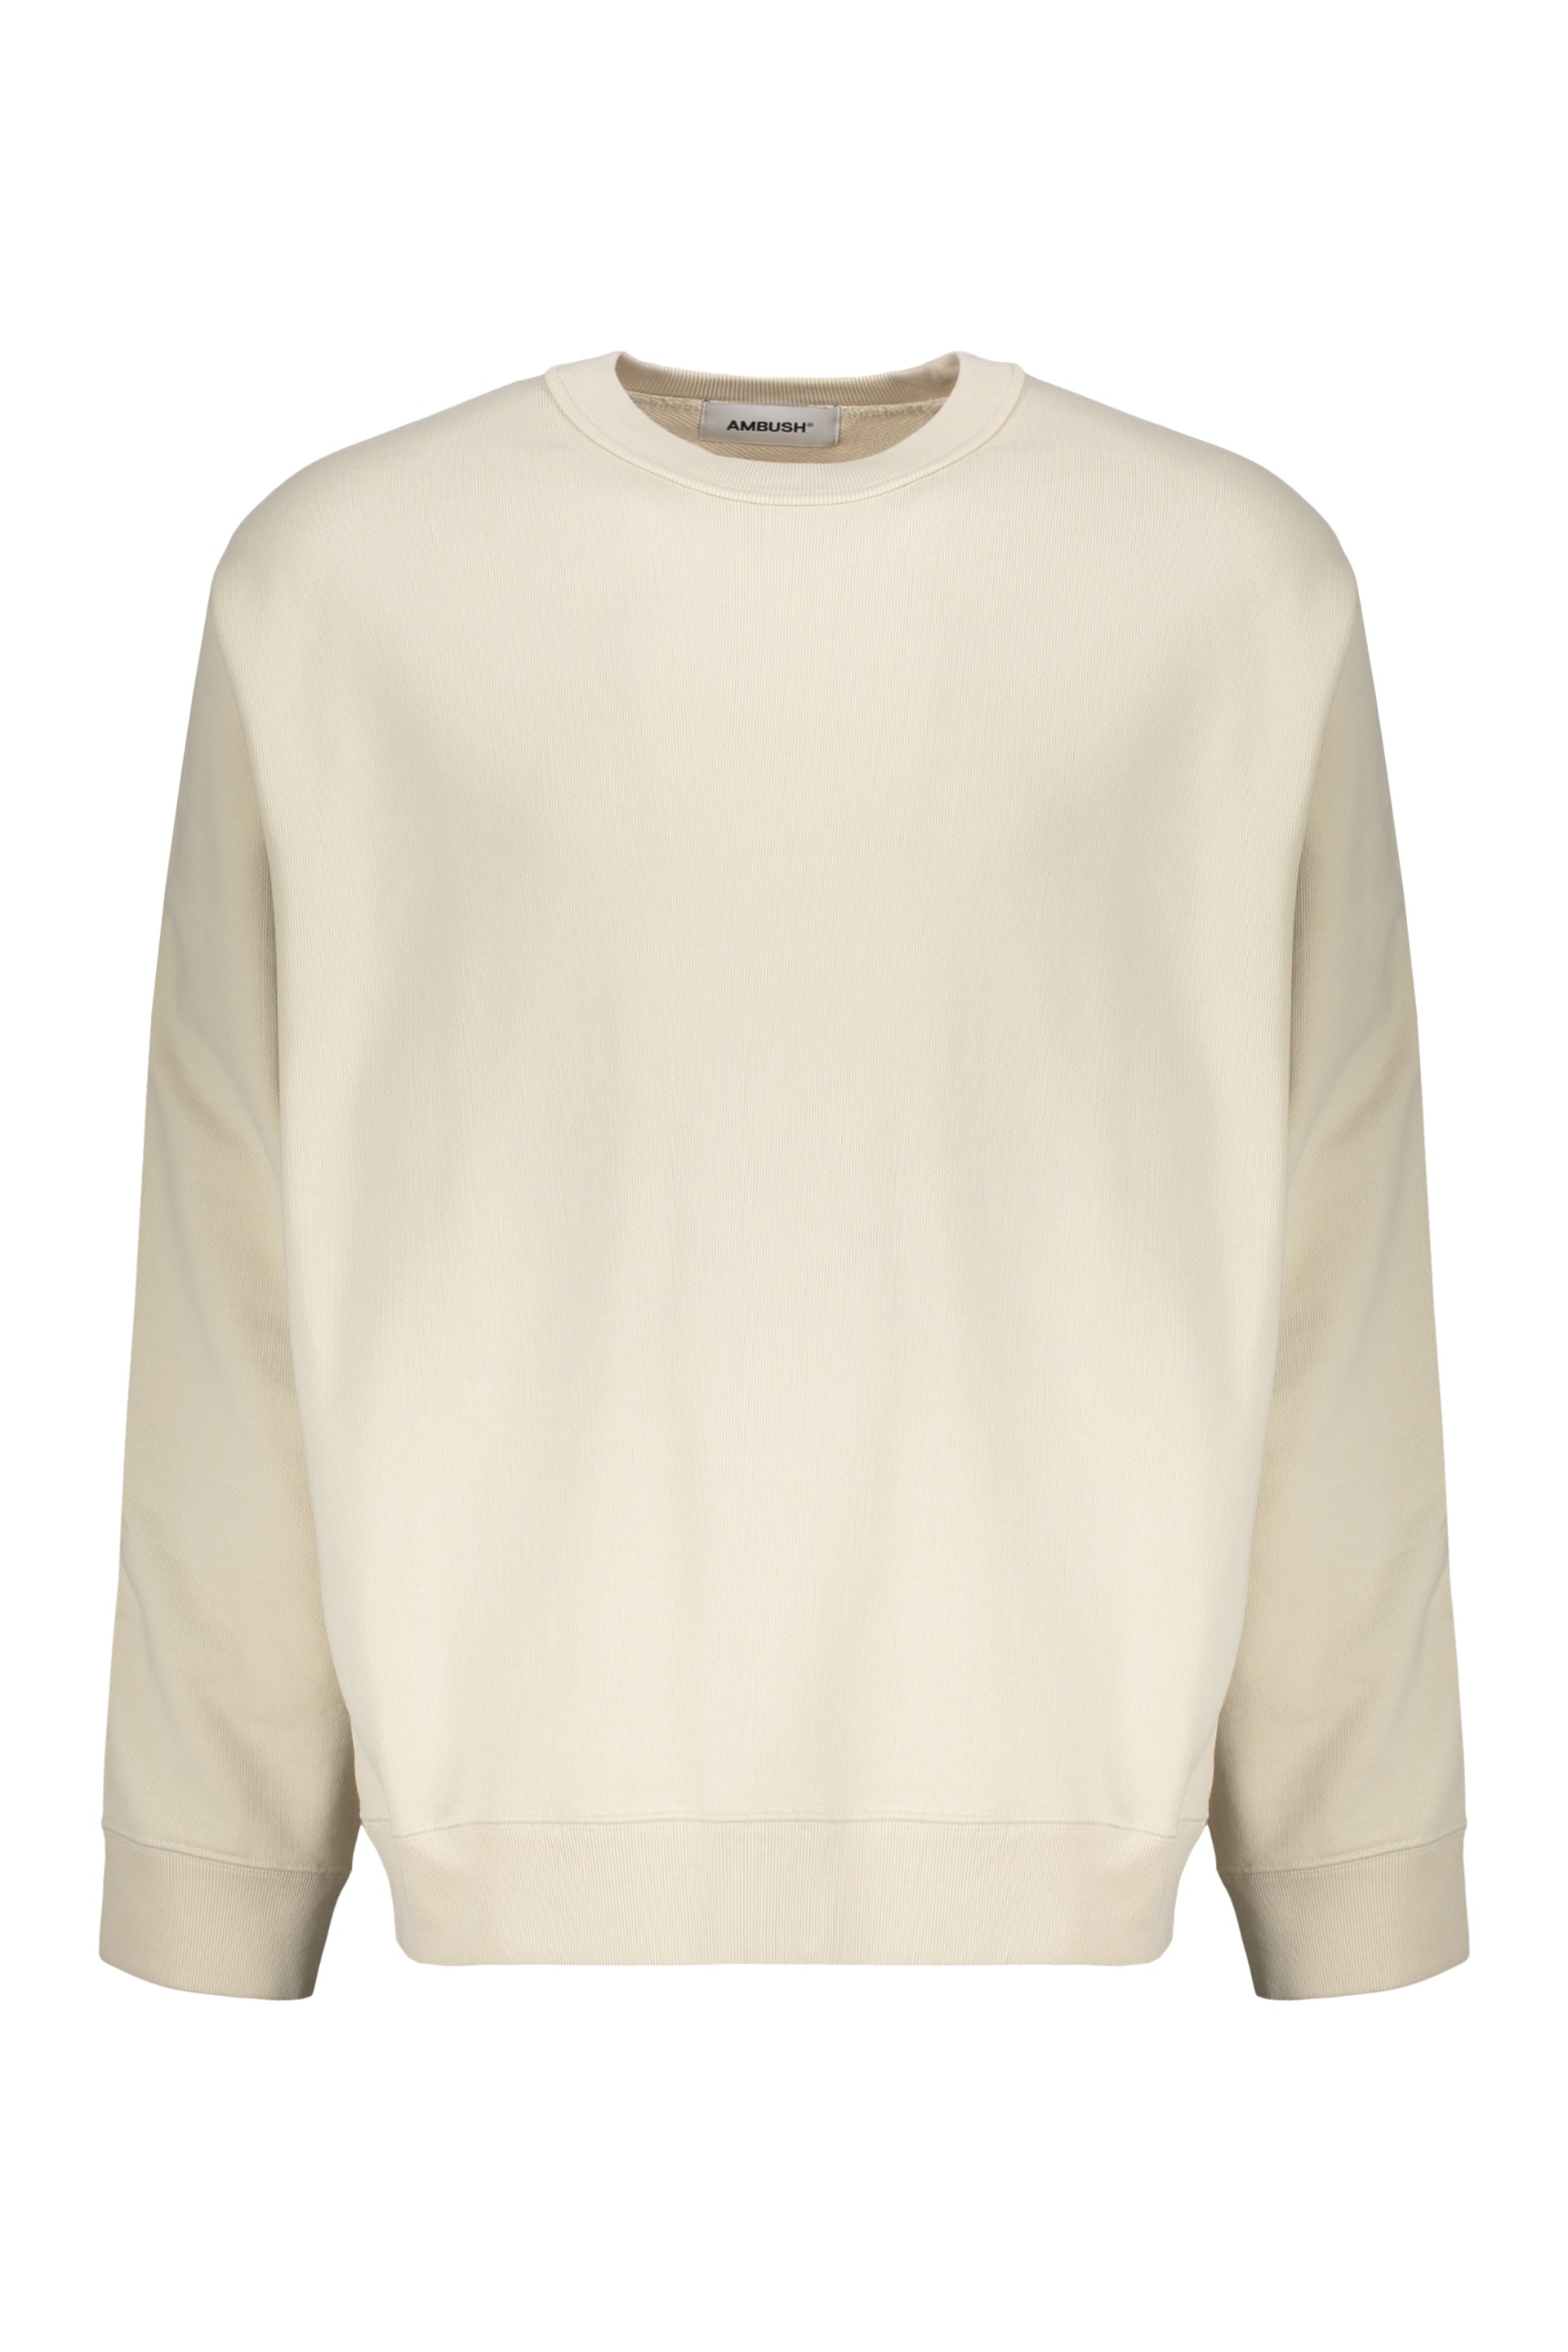 AMBUSH-OUTLET-SALE-Cotton-sweatshirt-Strick-L-ARCHIVE-COLLECTION.jpg